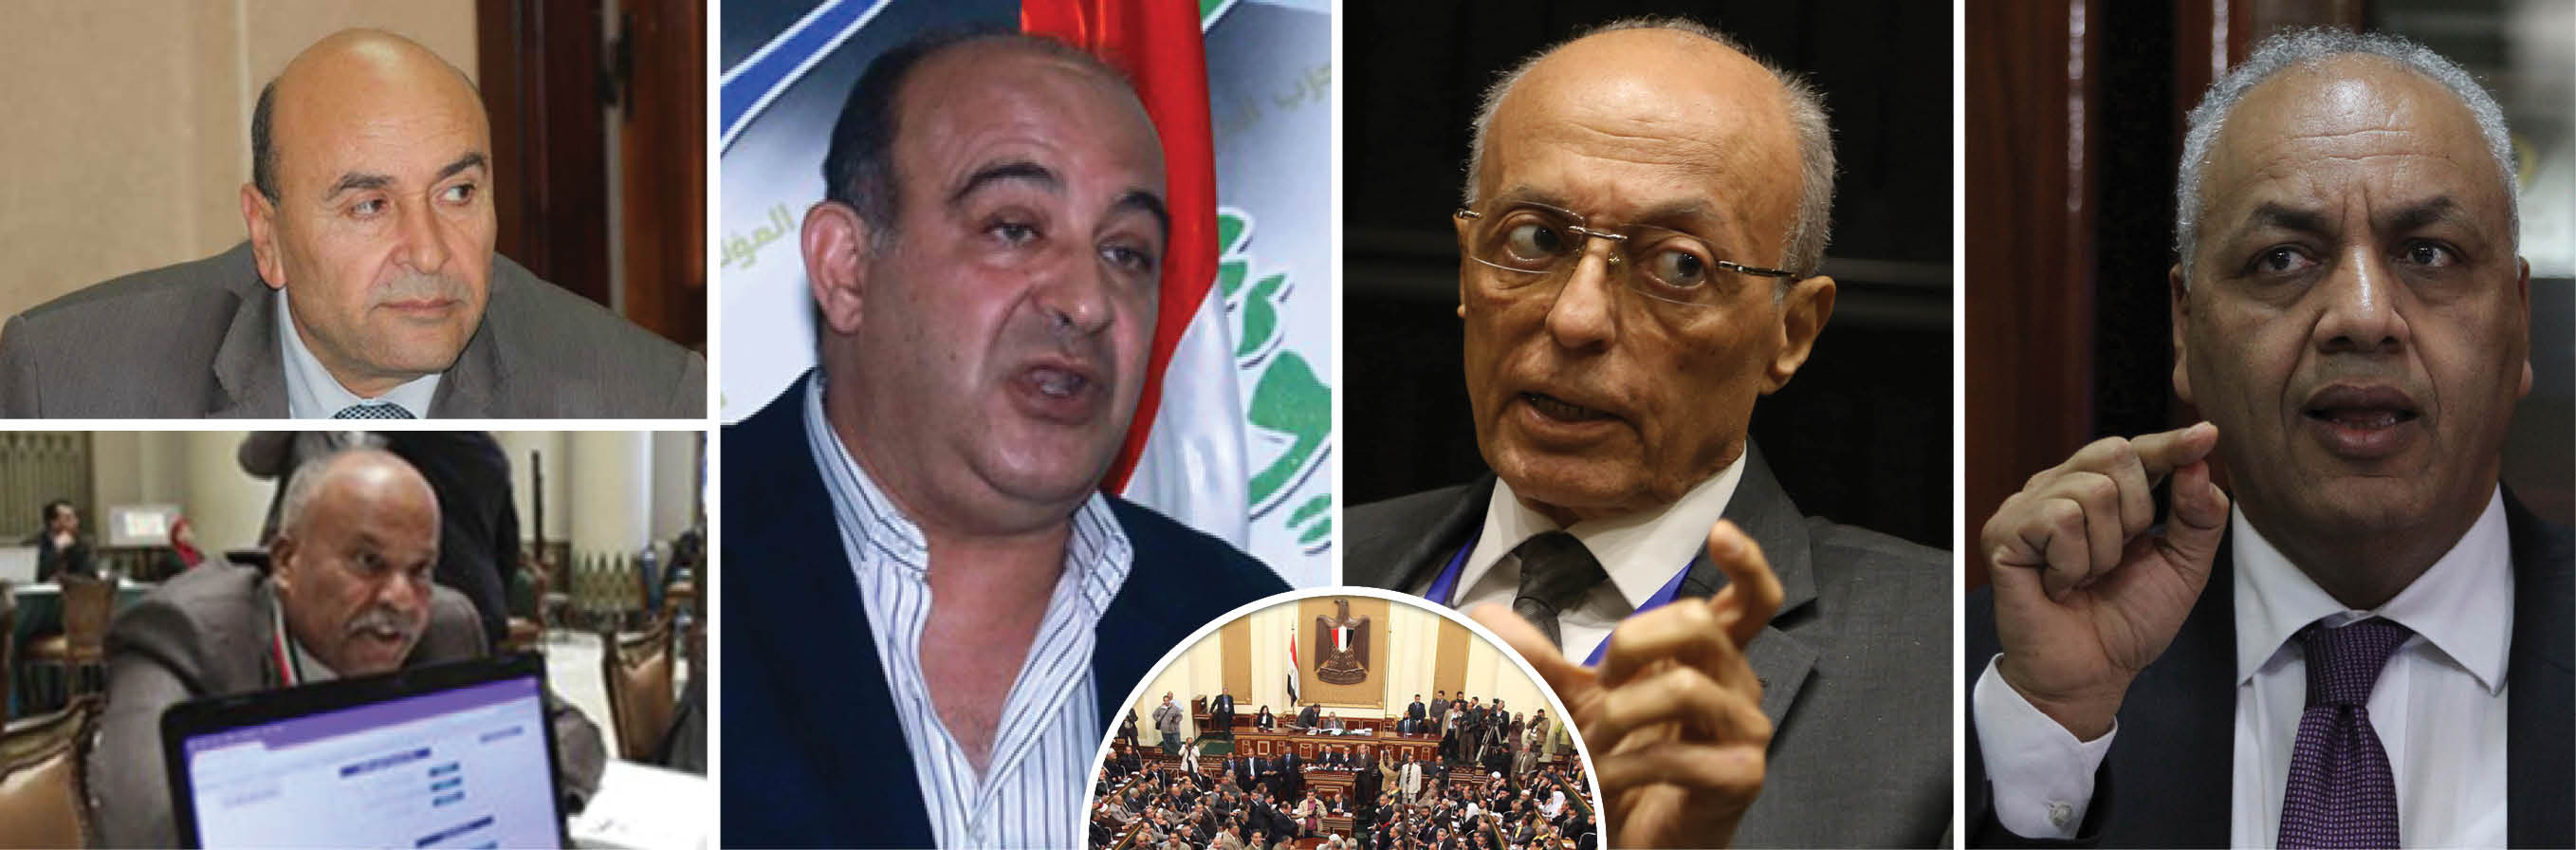 وصايا دعم مصر قبل افتتاح البرلمان